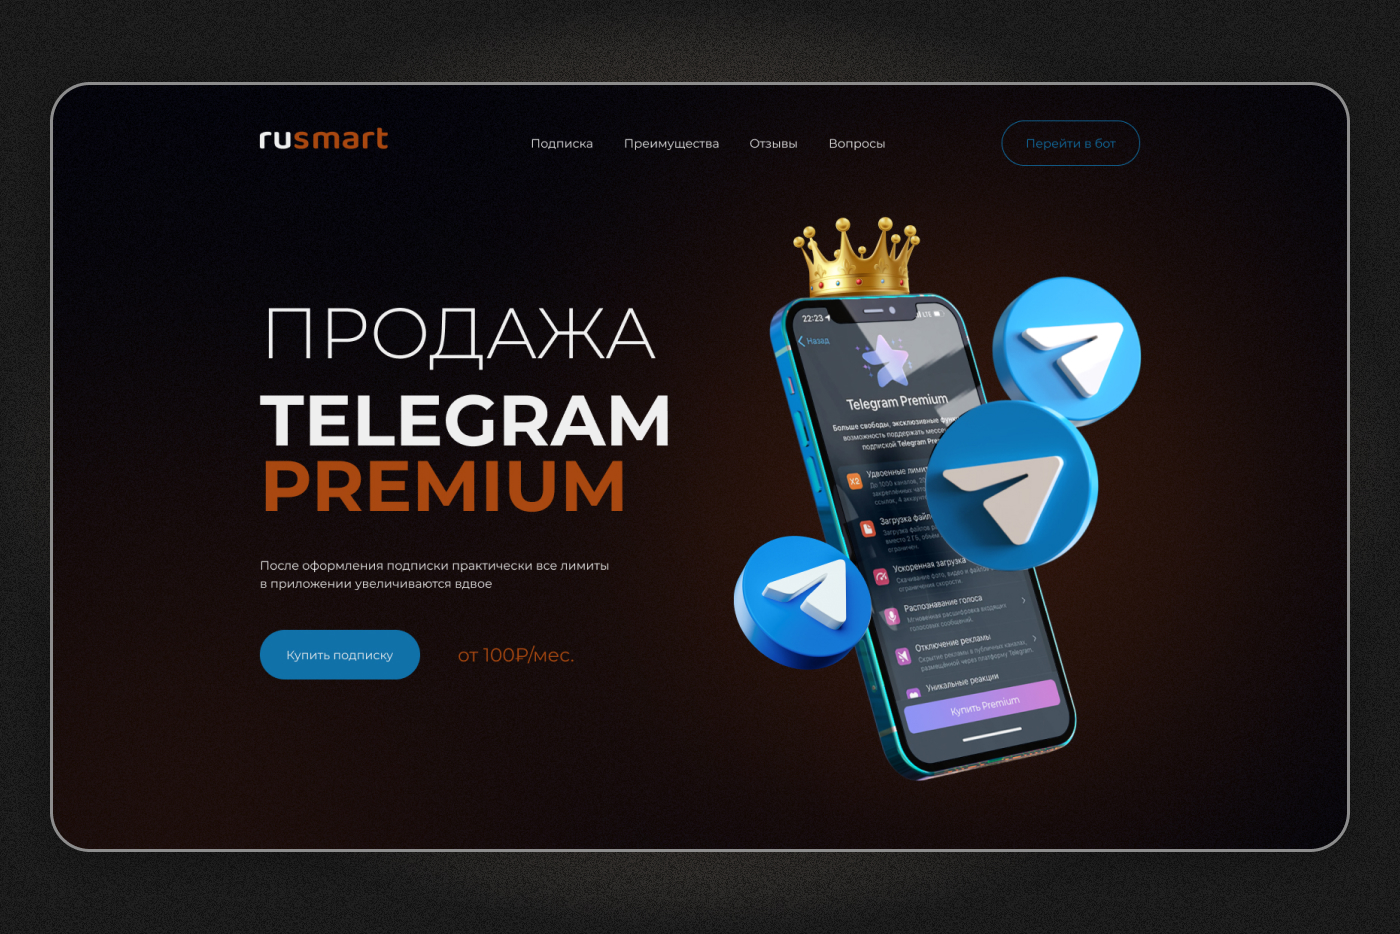 Скачать телеграмм премиум на андроид бесплатно последняя версия на русском фото 114